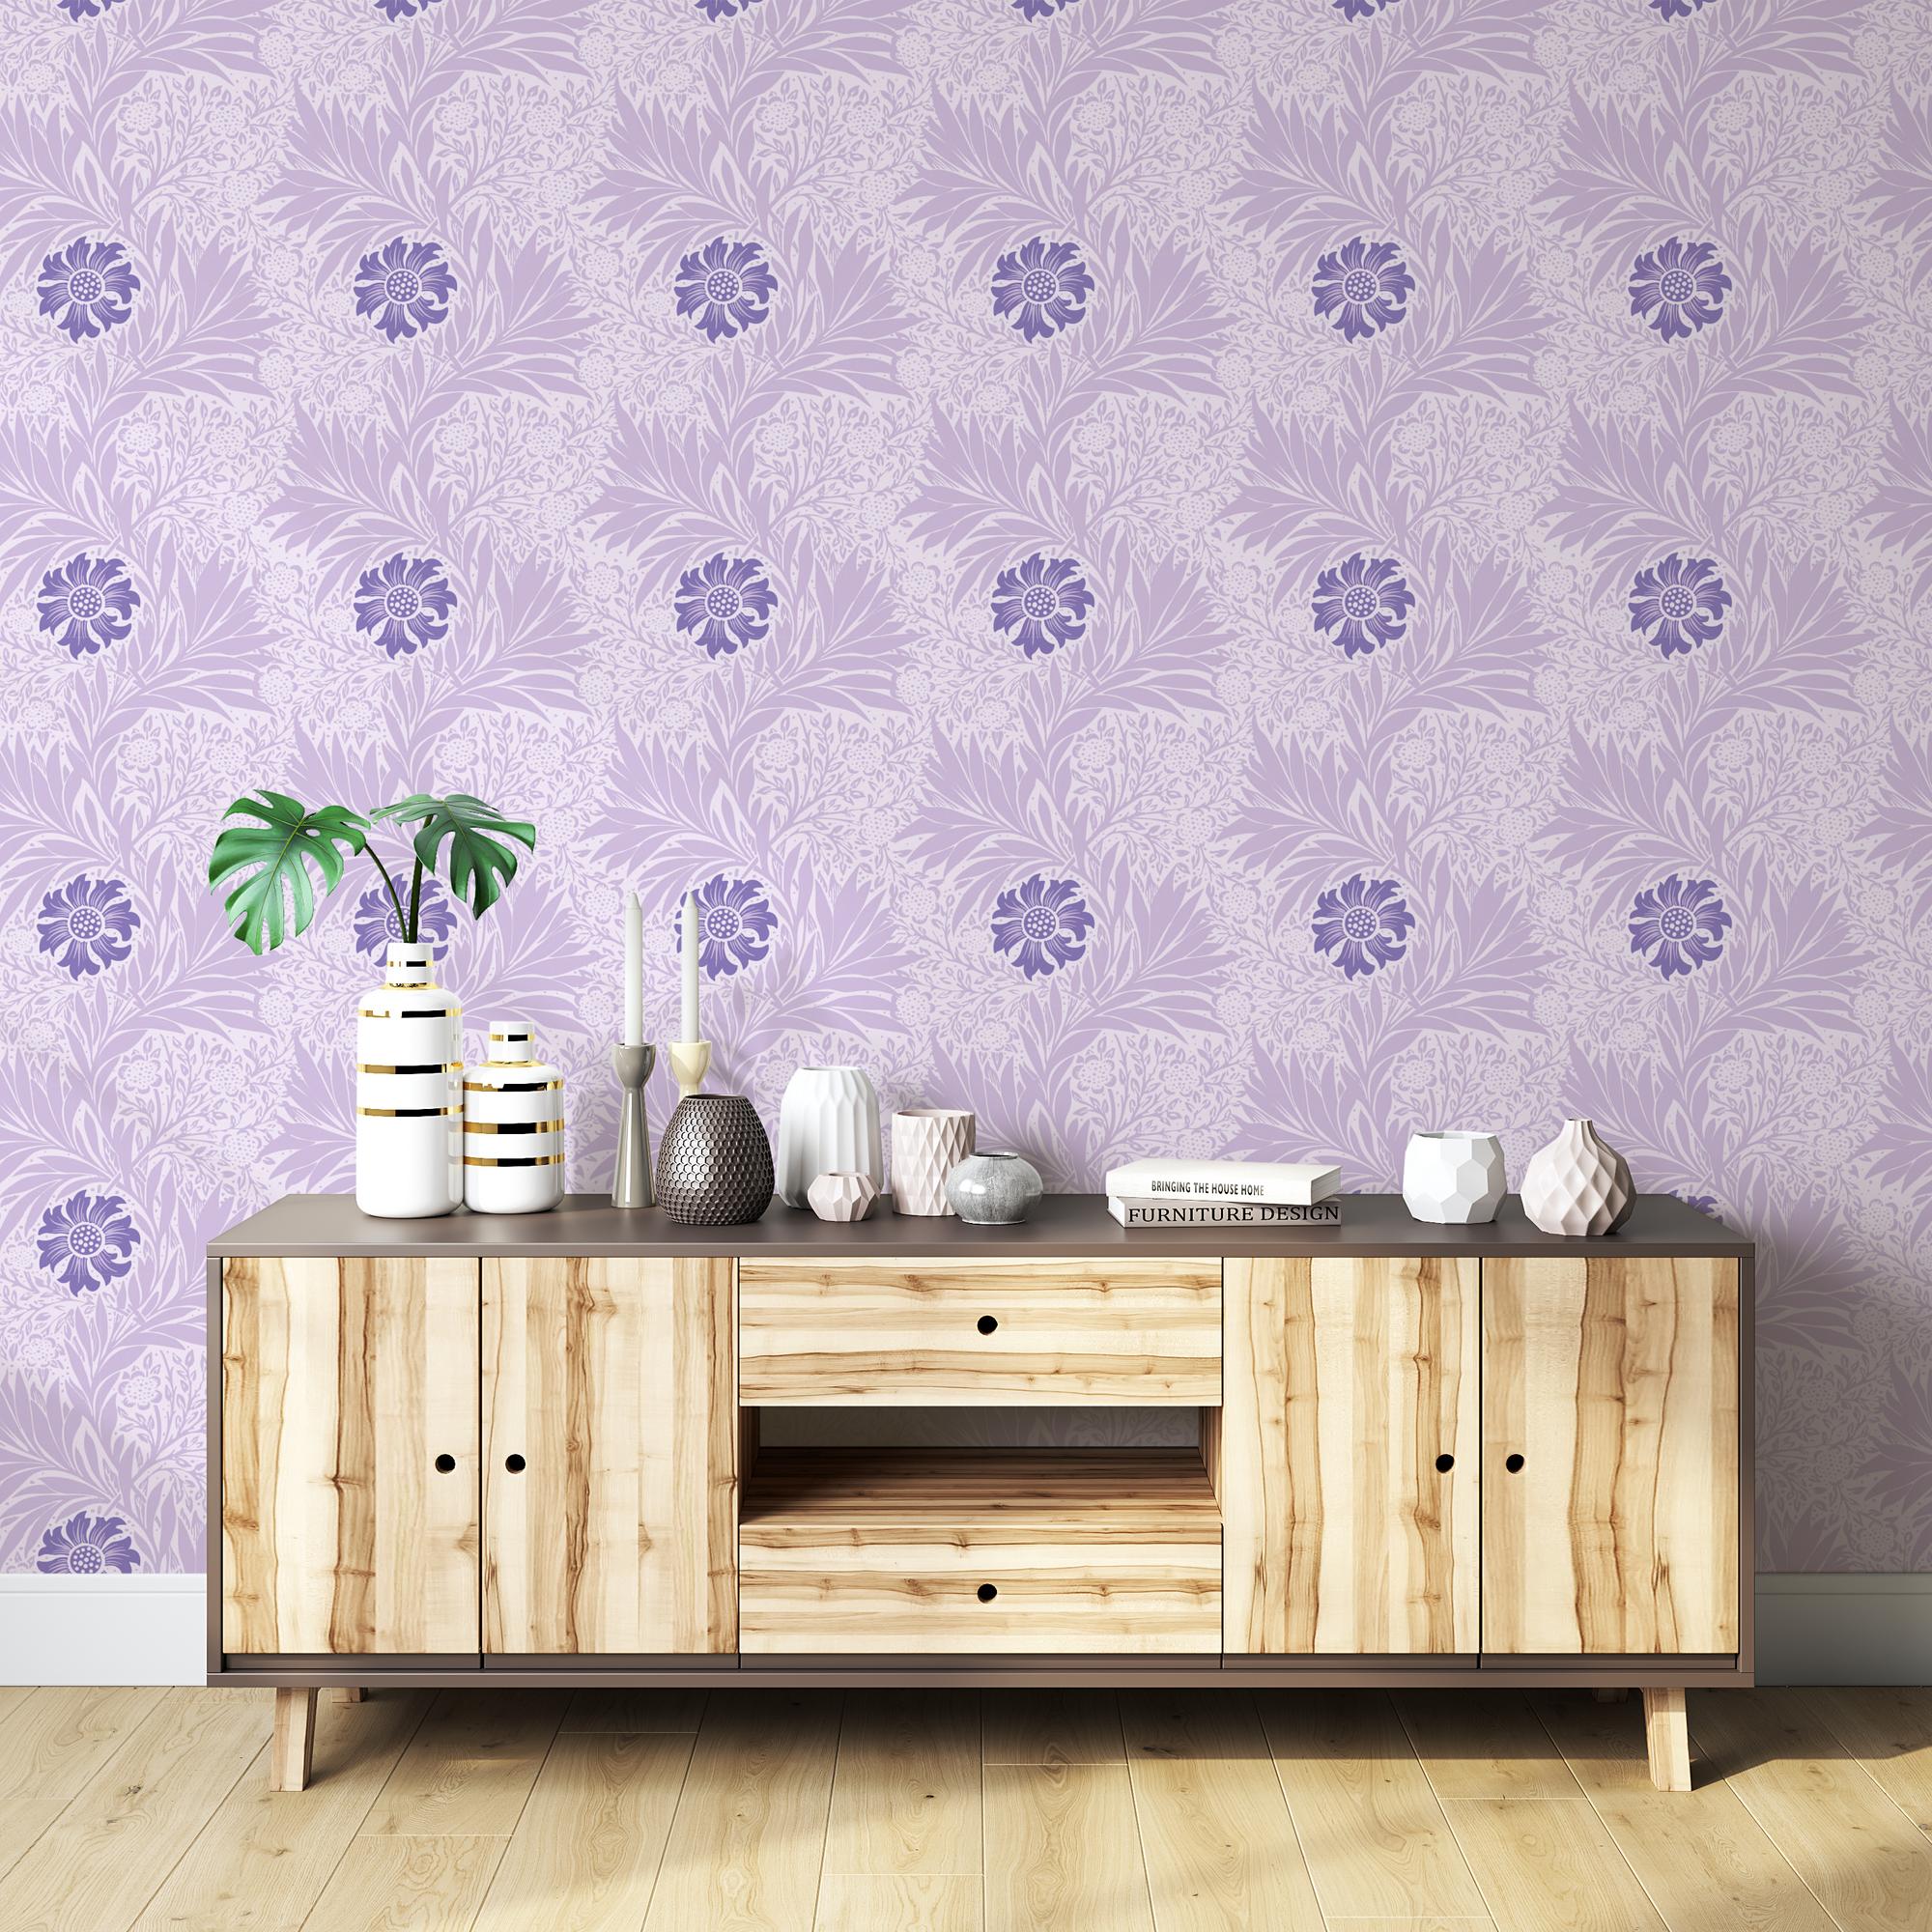 Papel tapiz de flores violetas para una decoración moderna